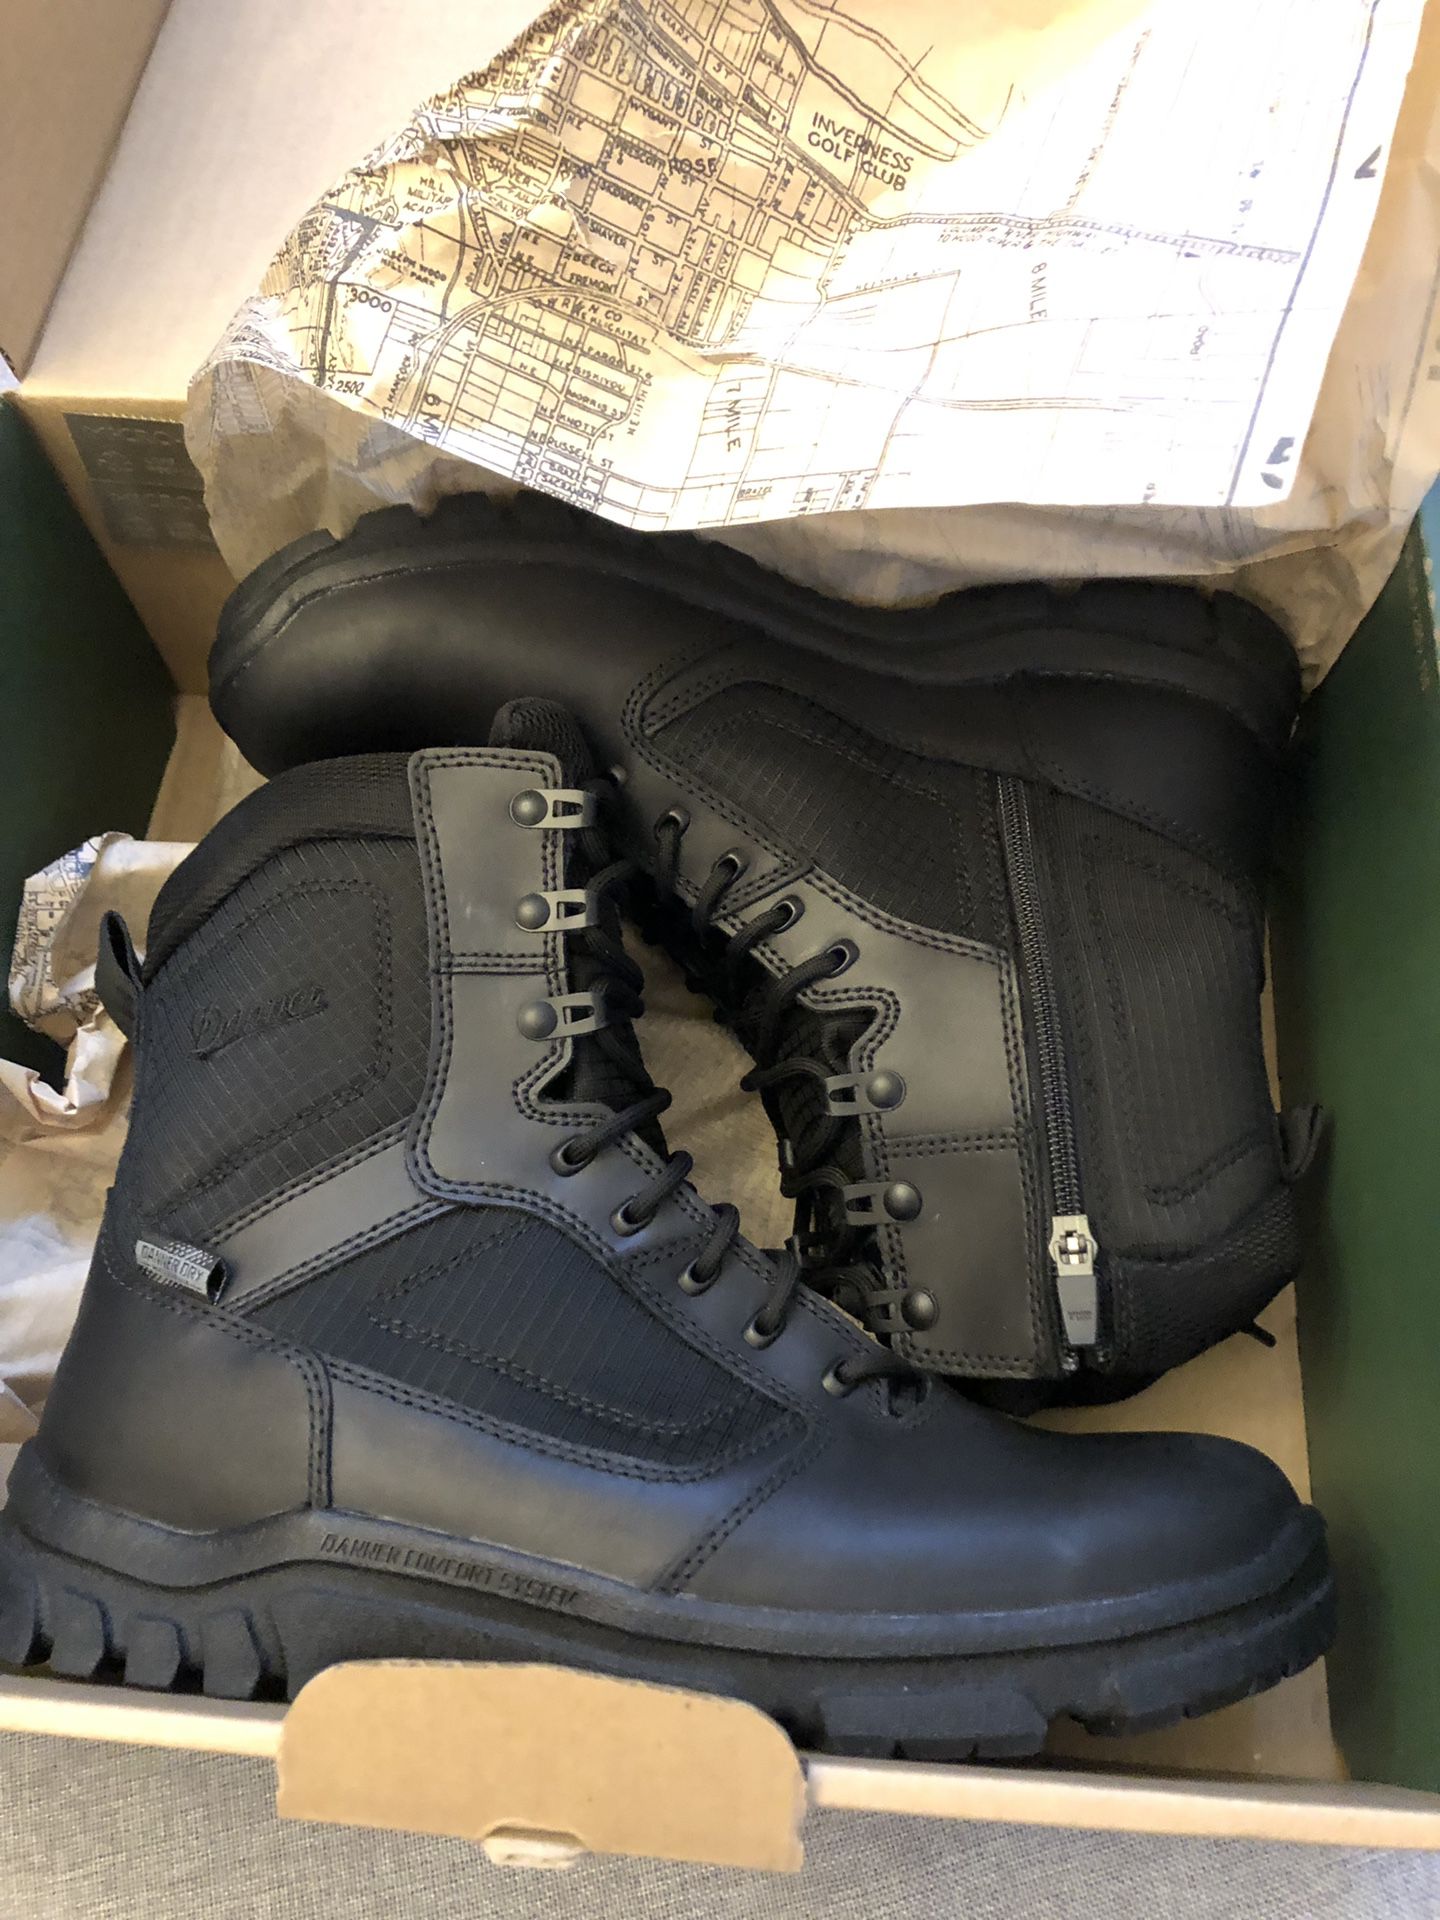 Brand new Danner waterproof boot men’s size 10